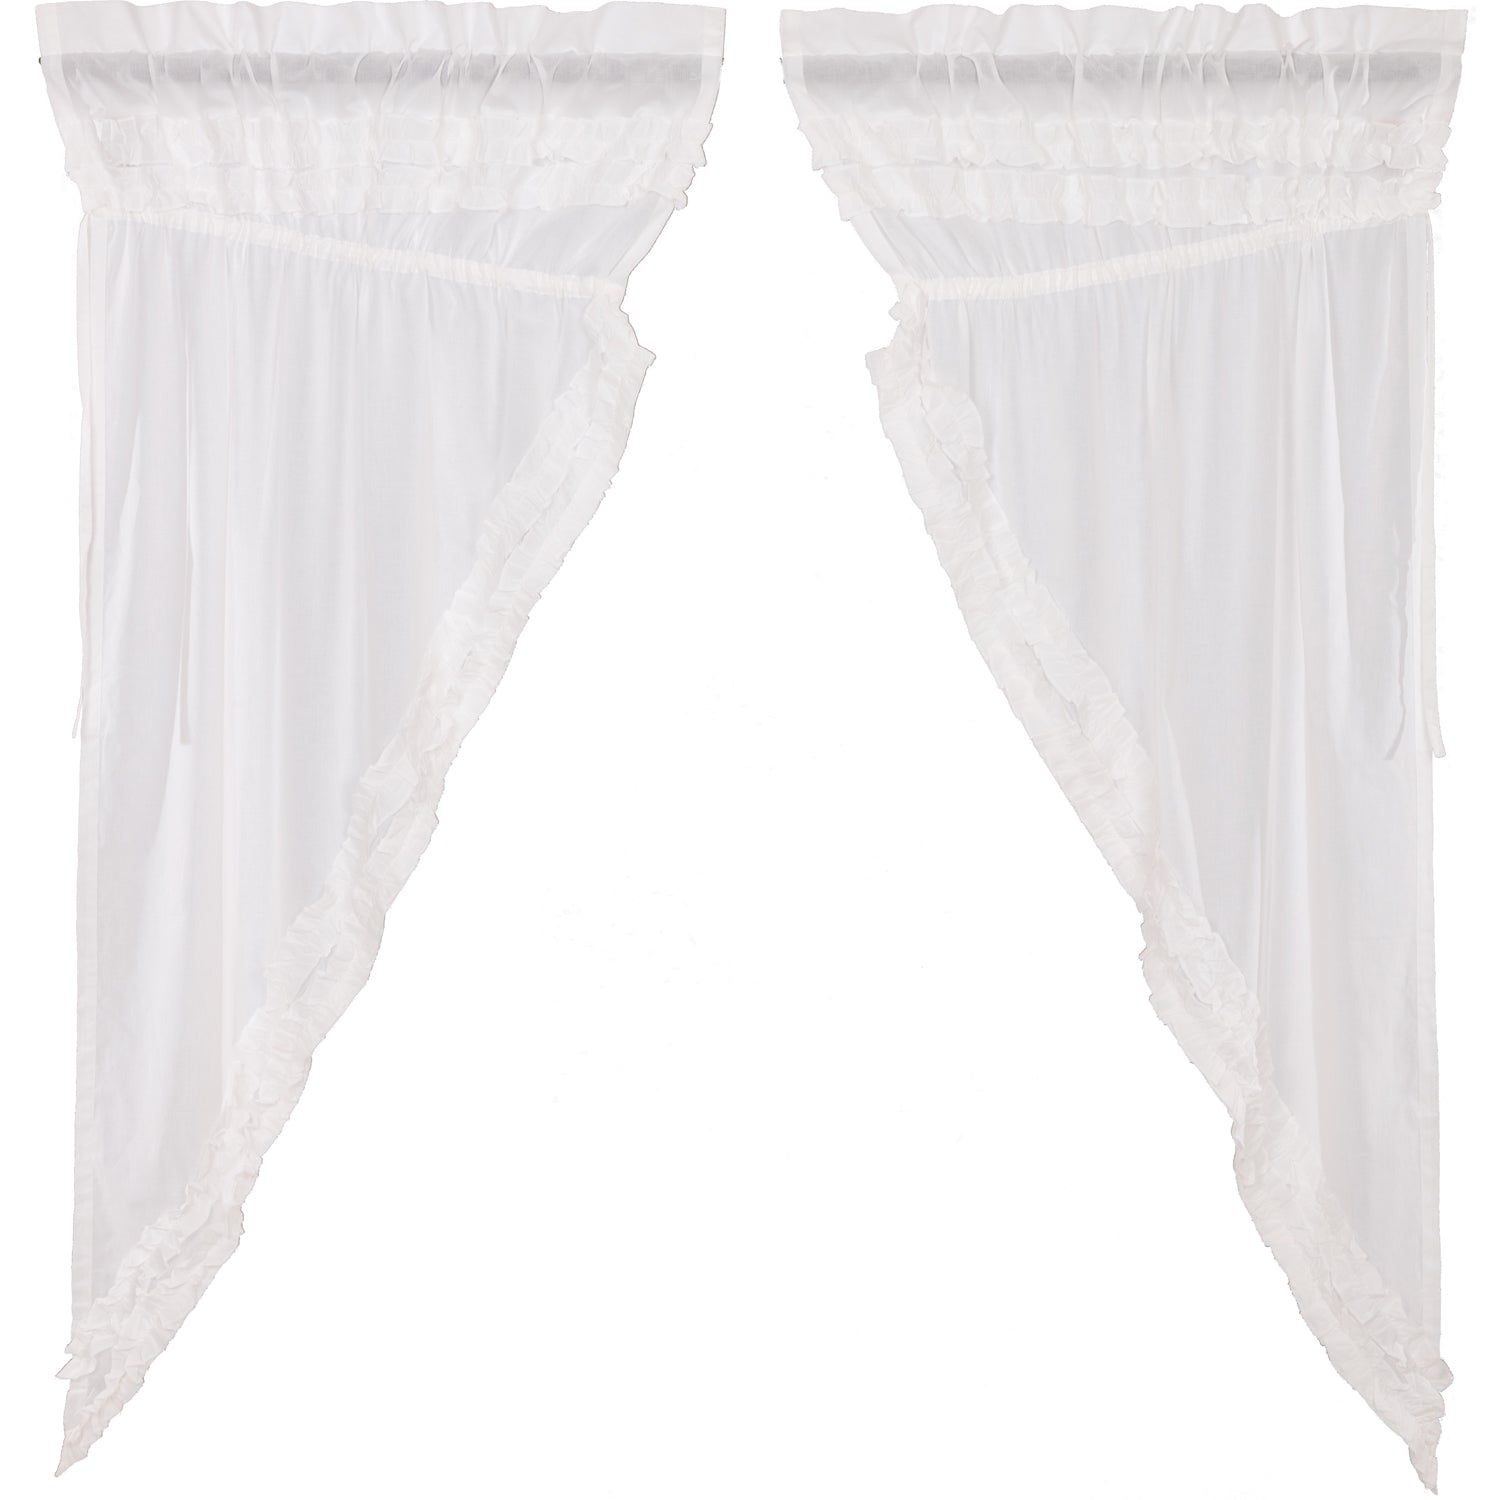 51401-White-Ruffled-Sheer-Petticoat-Prairie-Short-Panel-Set-of-2-63x36x18-image-6